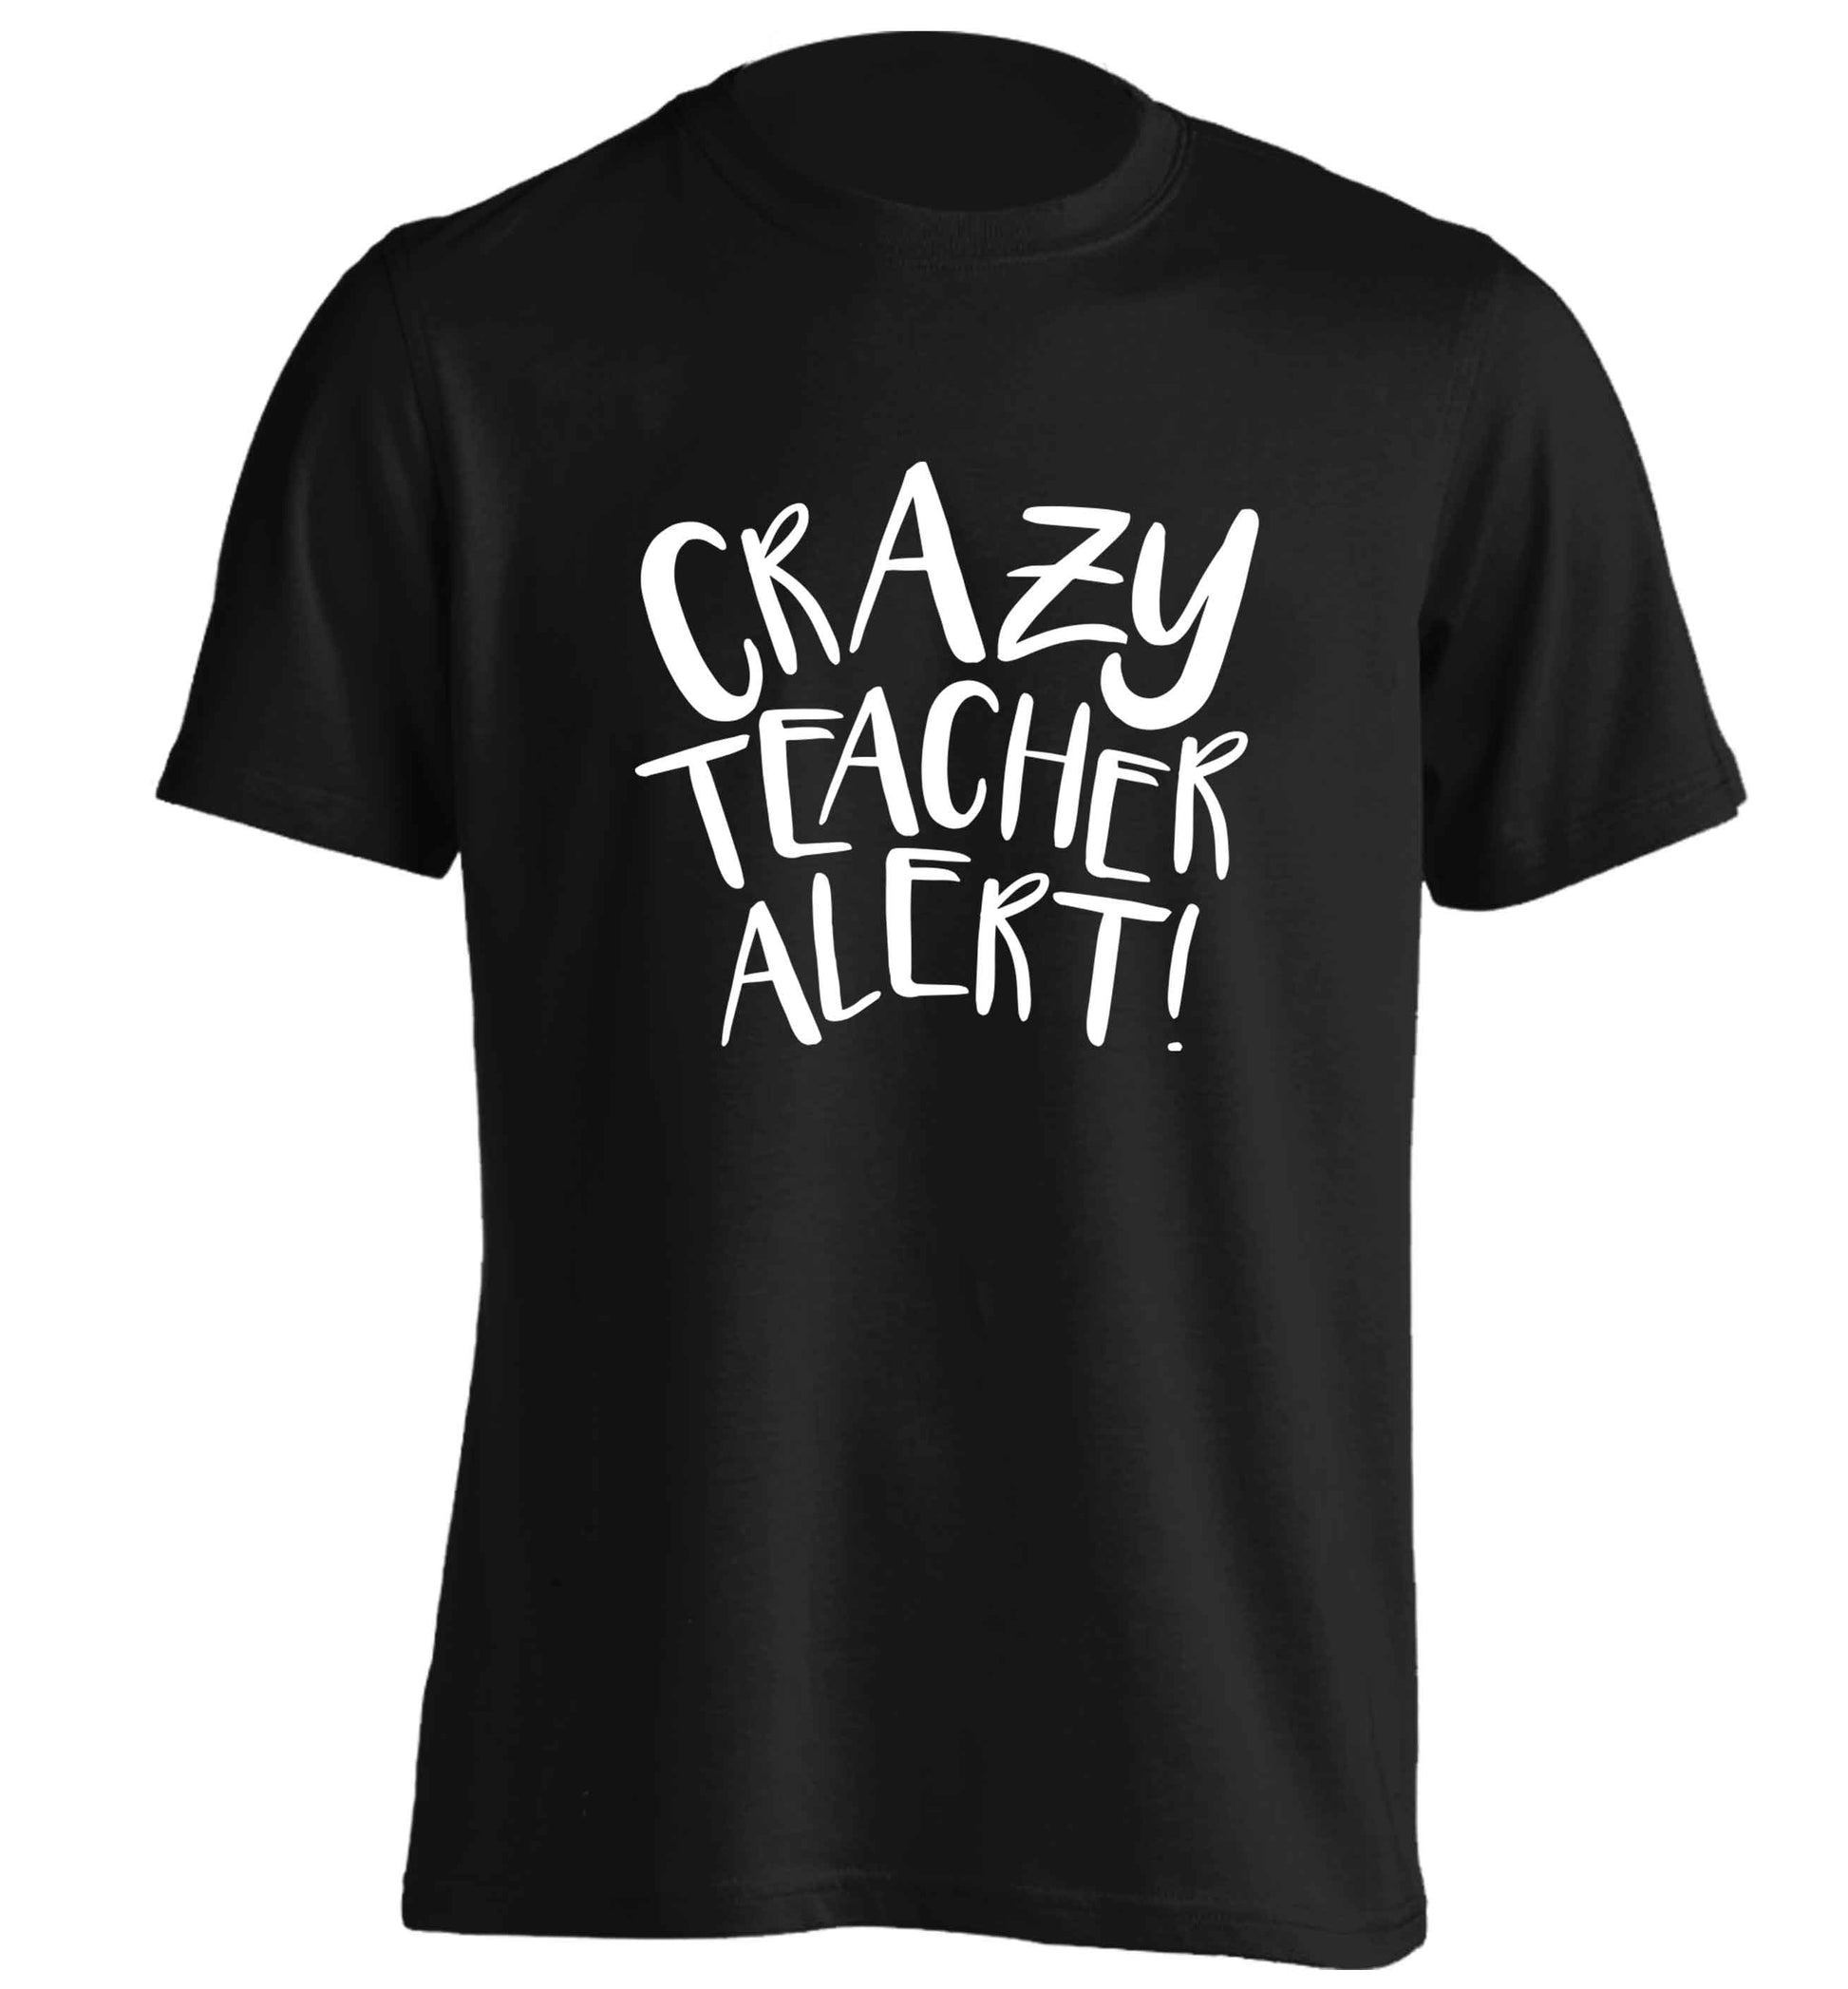 Crazy teacher alert adults unisex black Tshirt 2XL